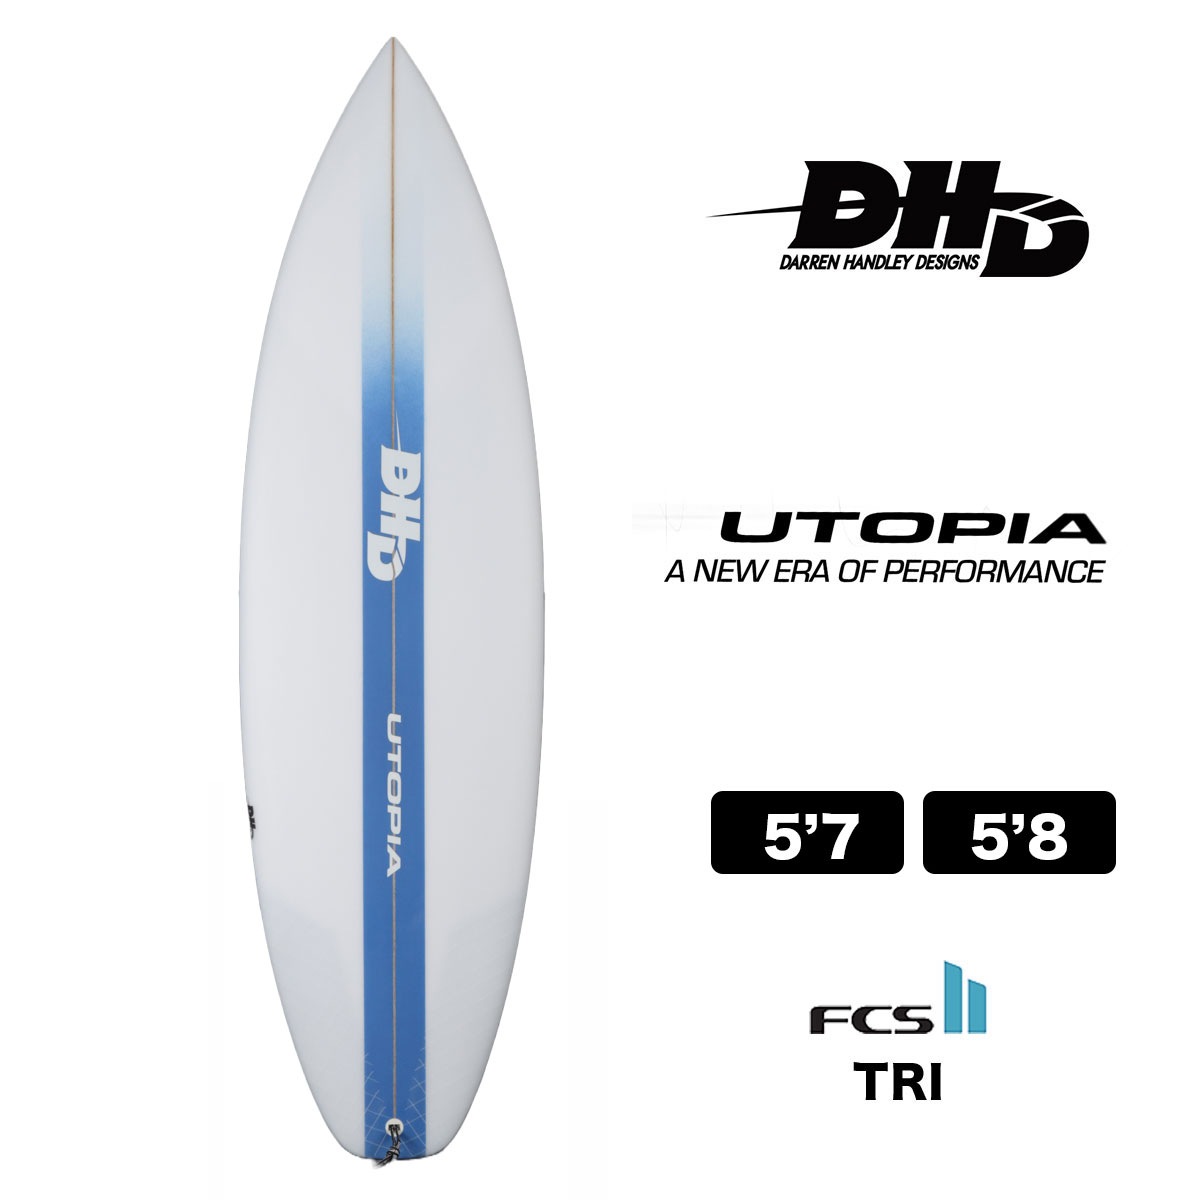 DHD Surfboad サーフボード  ダレンハンドレ1854x467x56